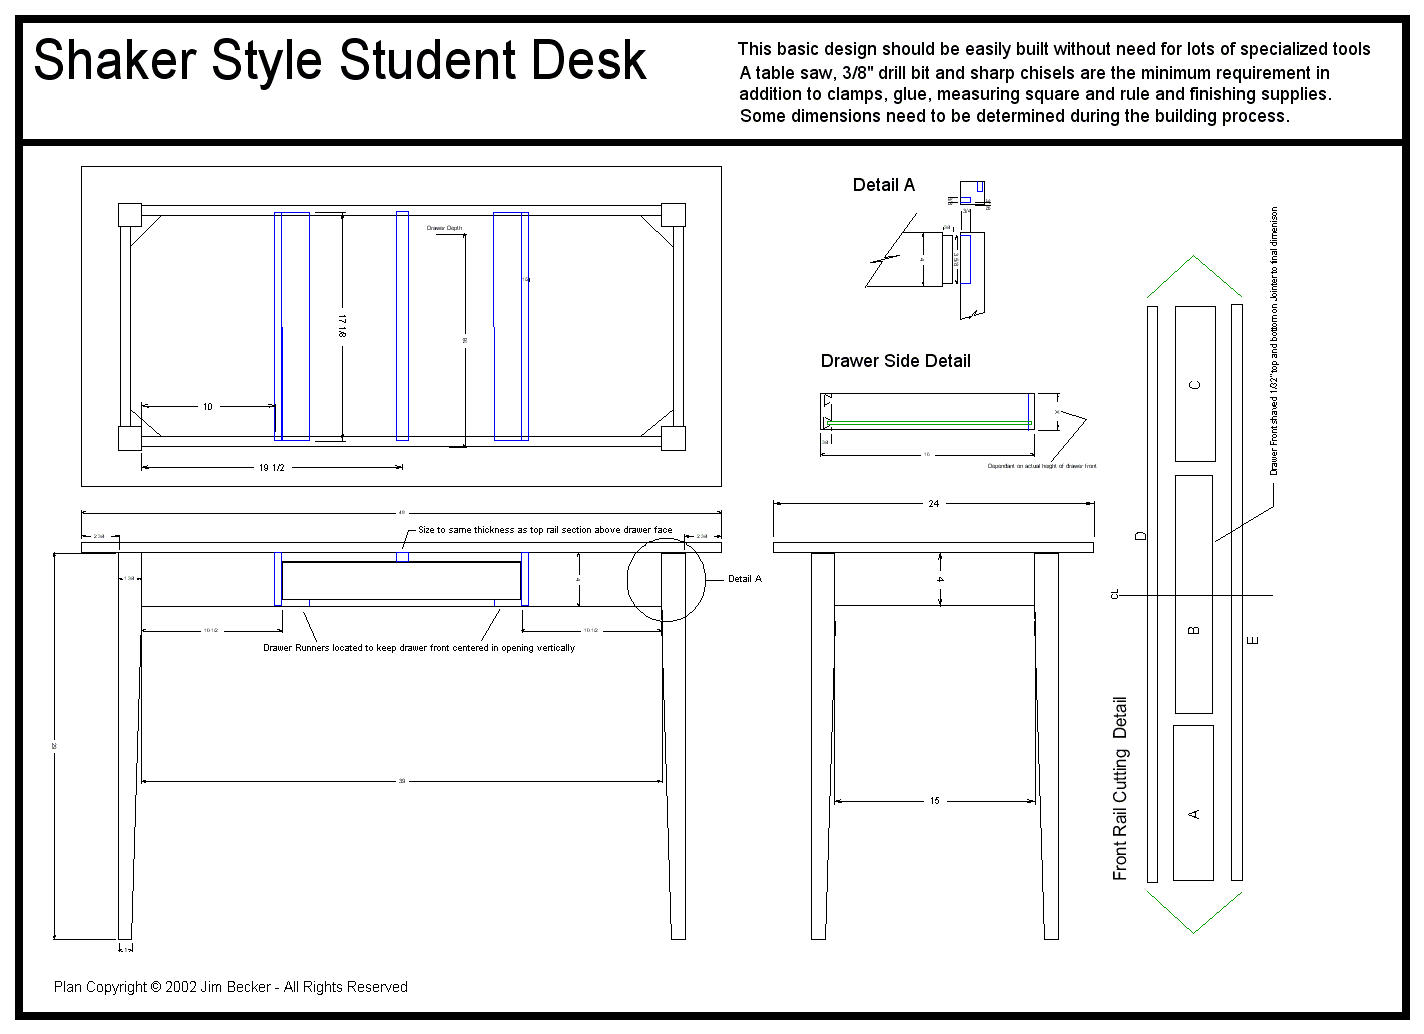 Shaker Student Desk Plans